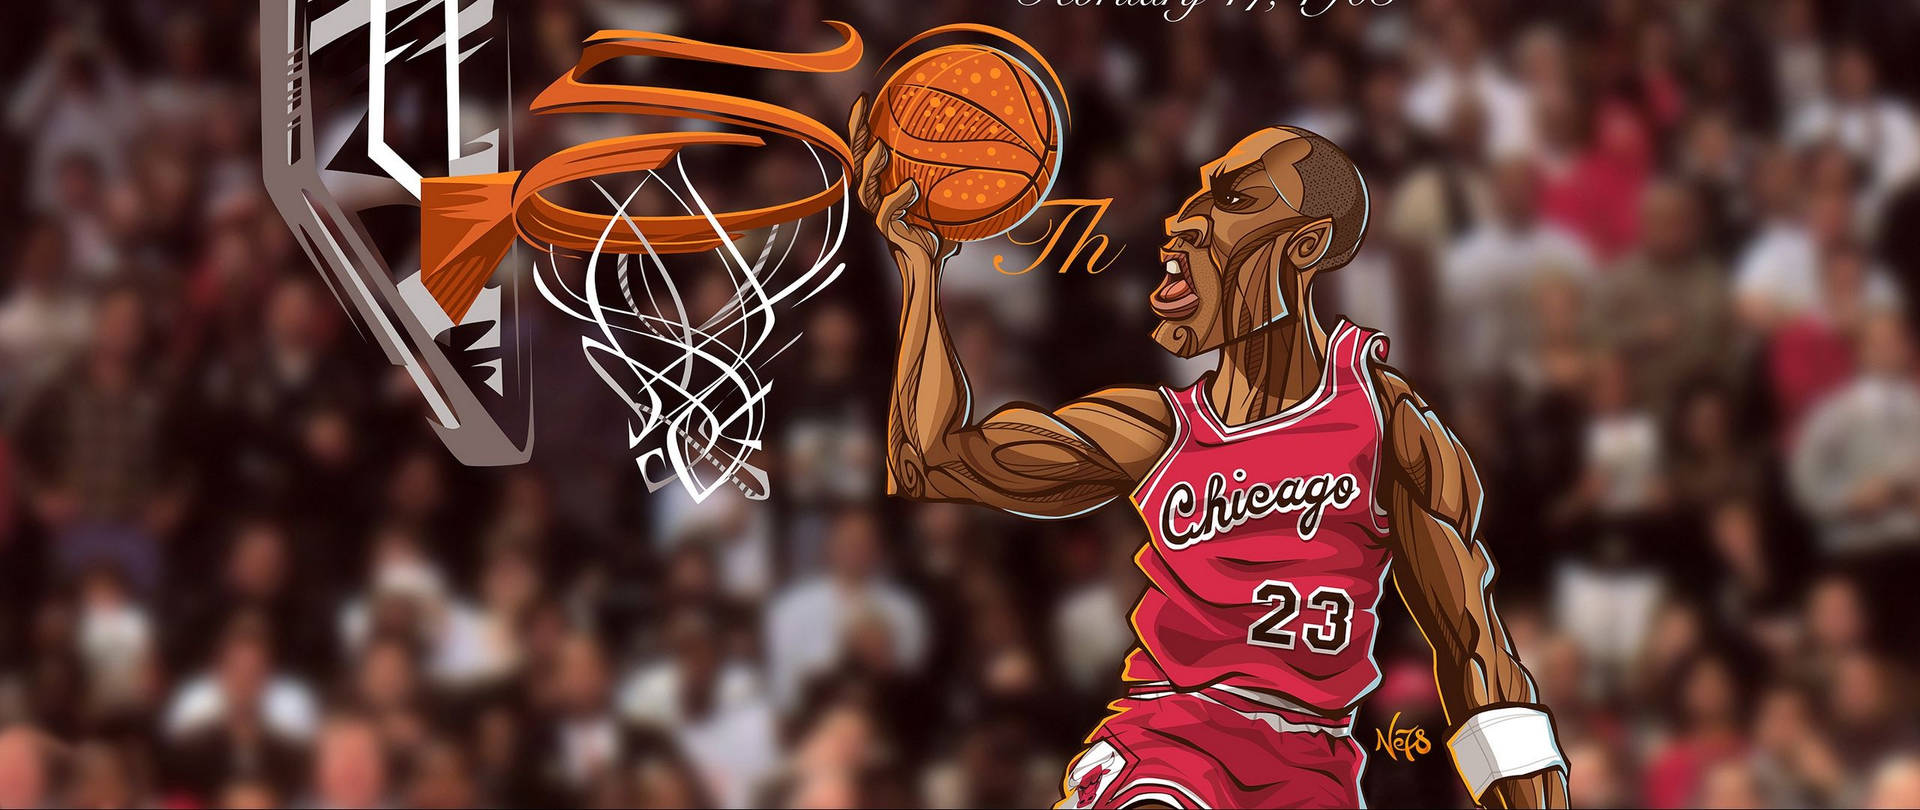 The Goat - Michael Jordan Wallpaper